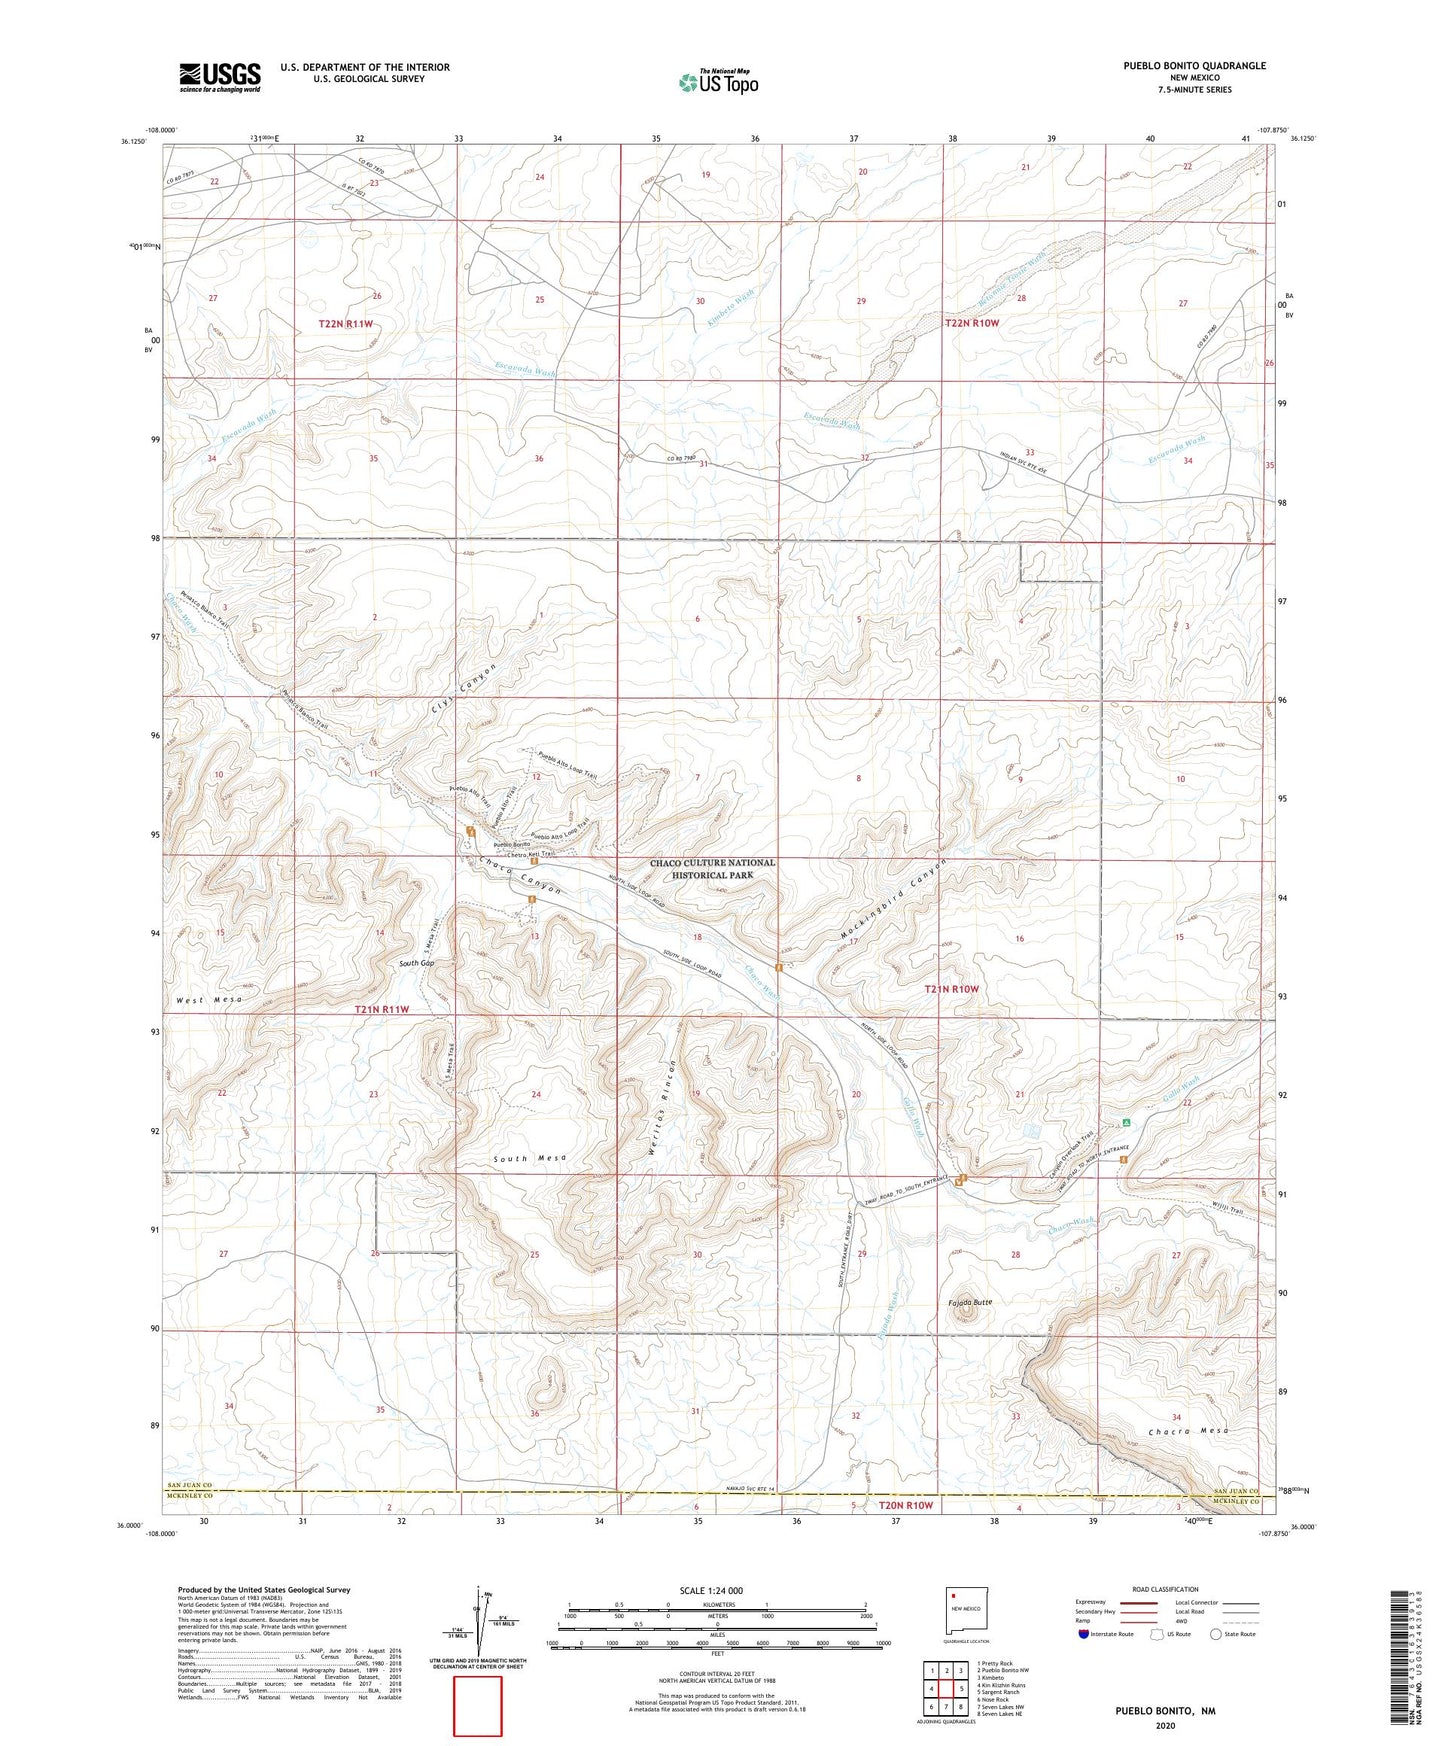 Pueblo Bonito New Mexico US Topo Map Image